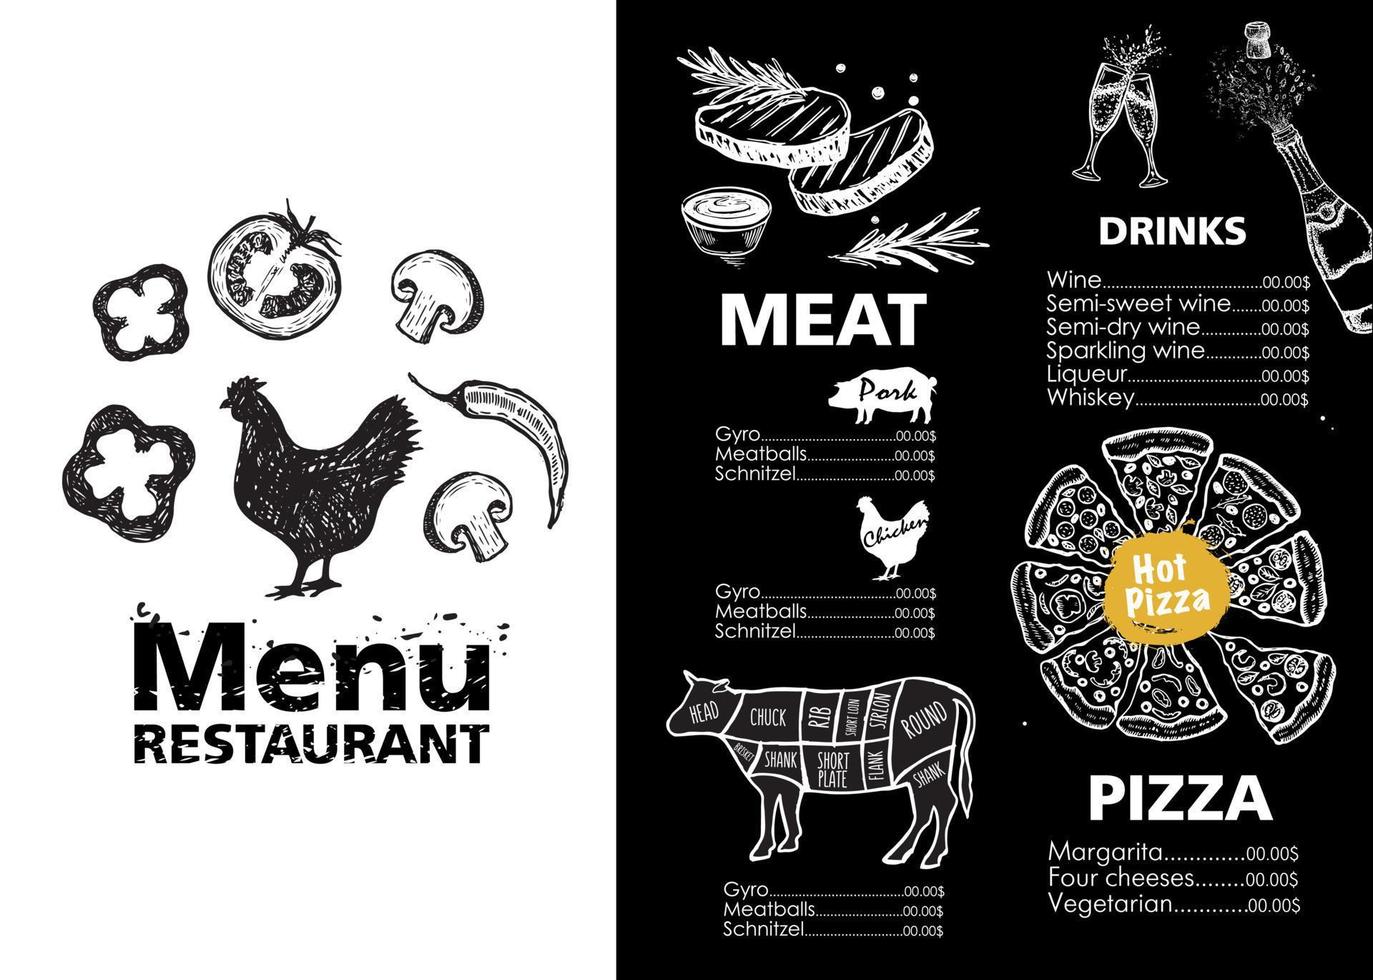 diseño de plantilla de menú para restaurante, ilustración de croquis. vector. vector